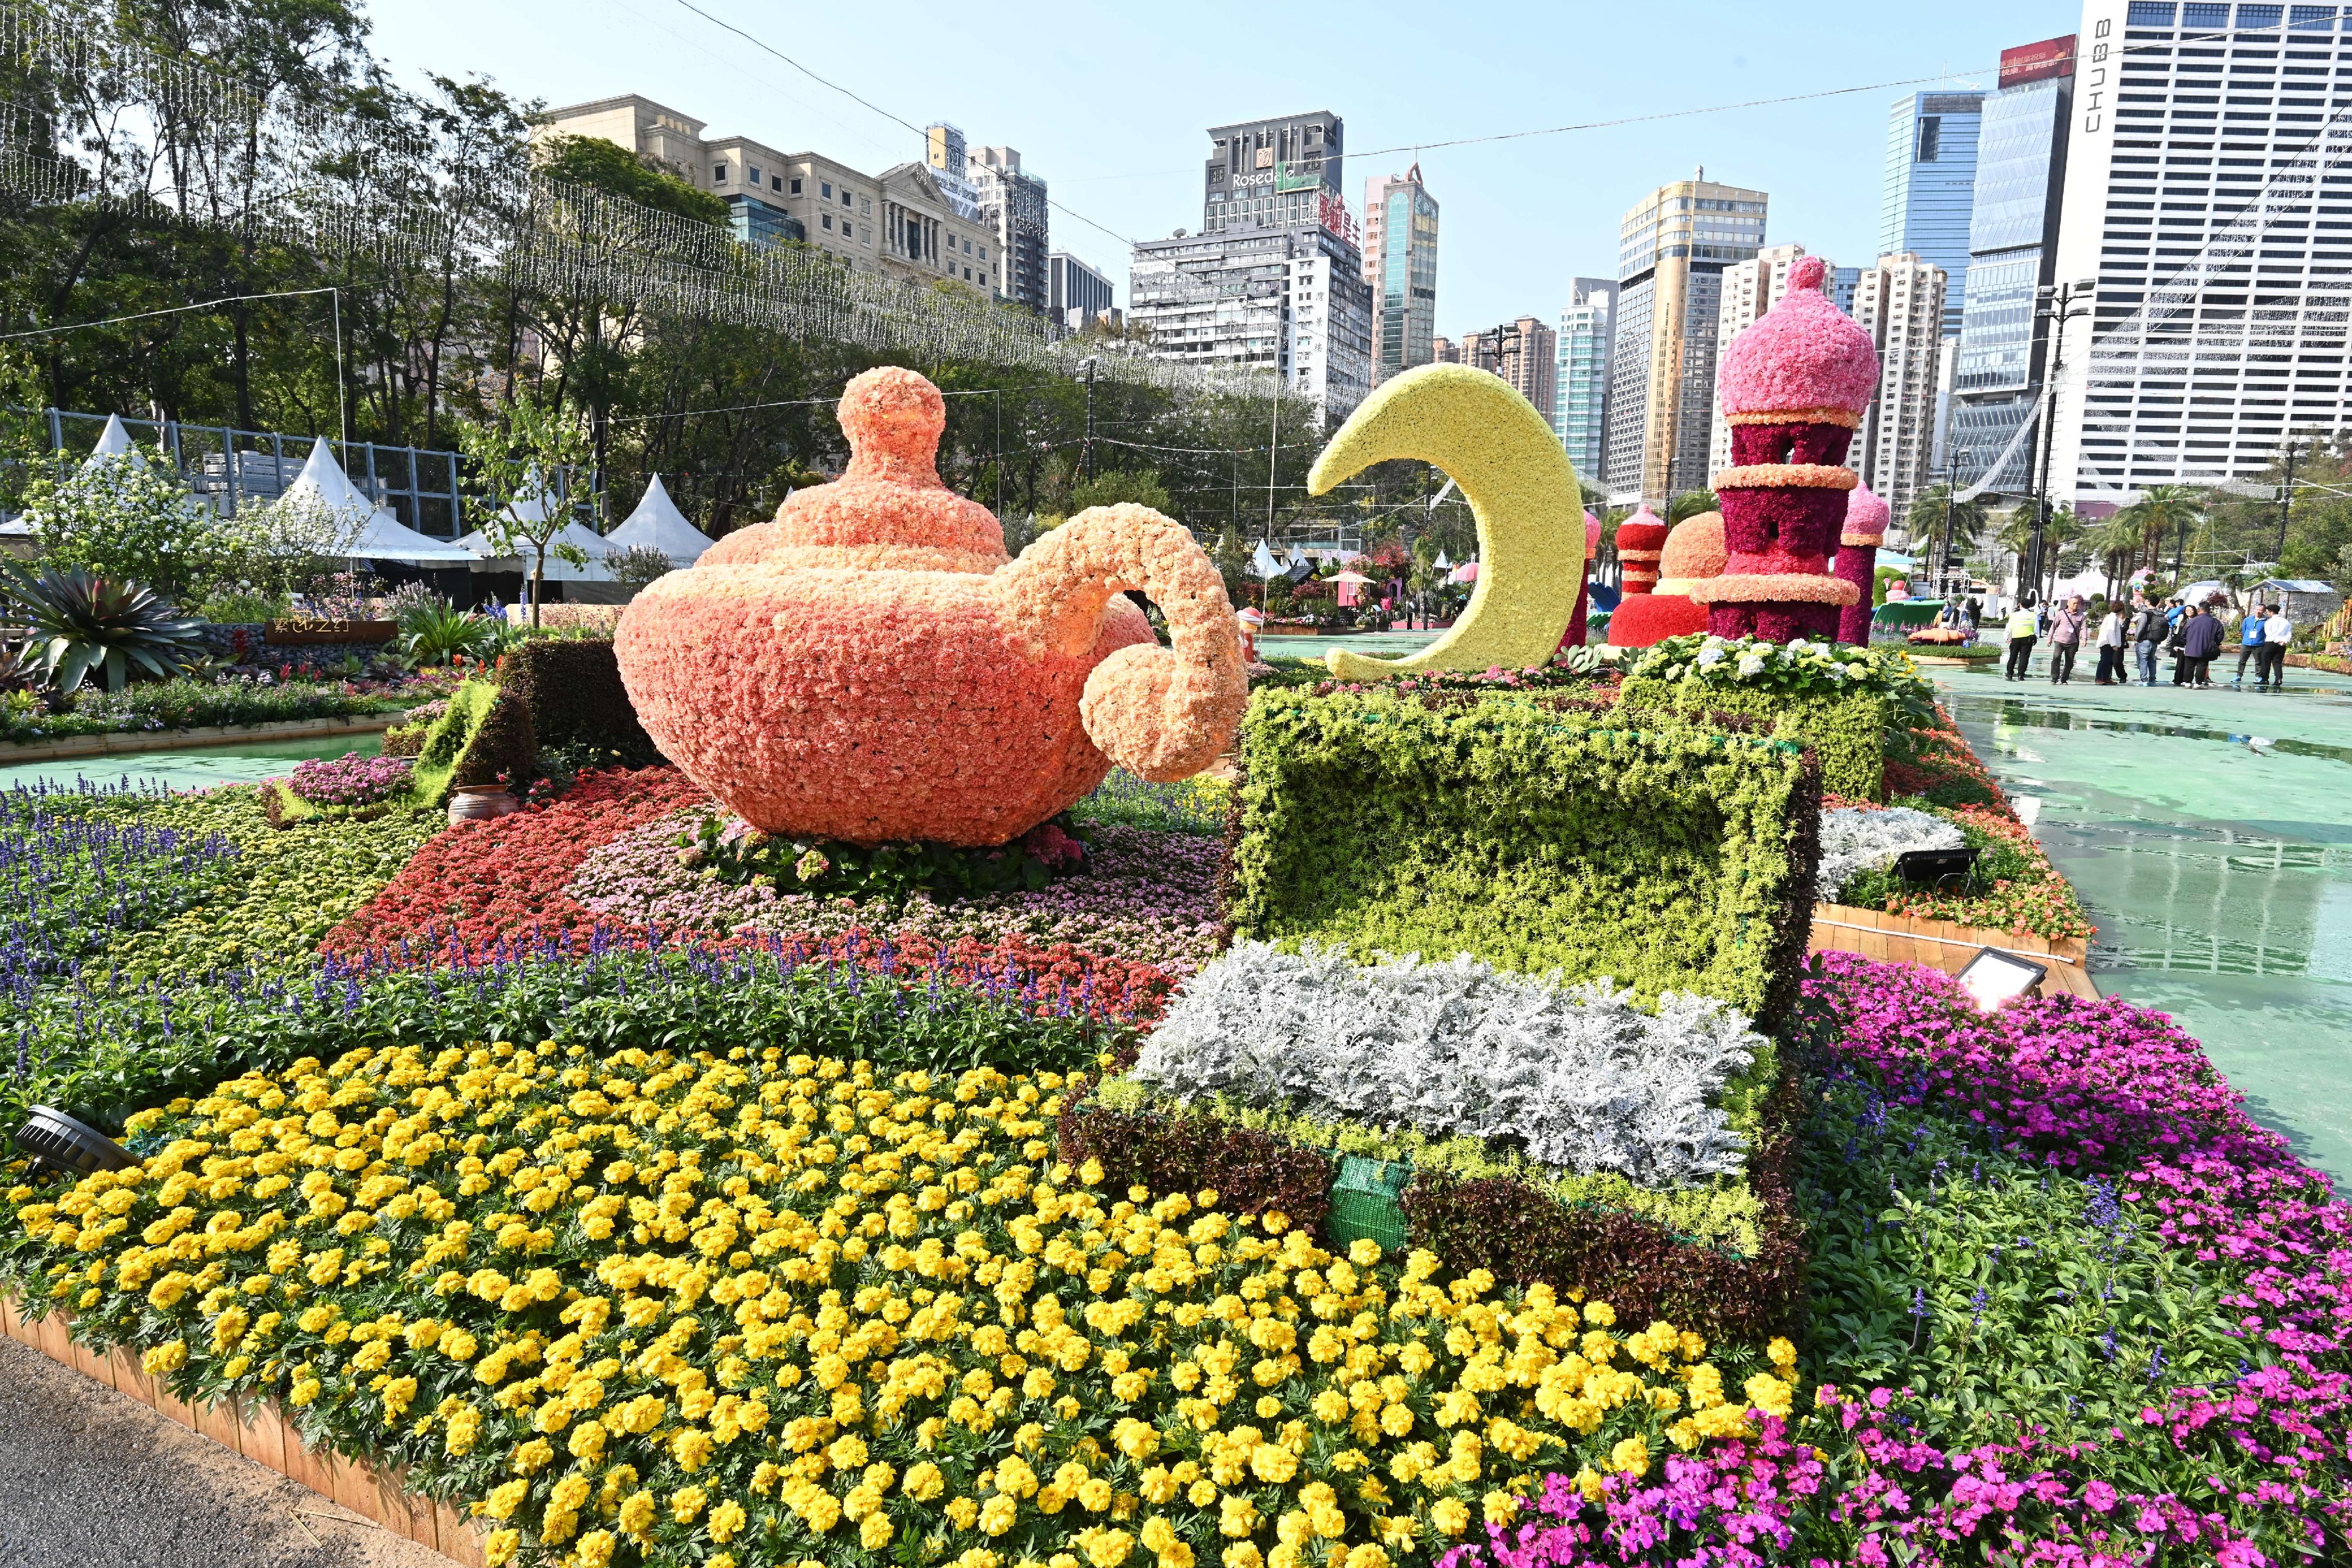 二○二四年香港花卉展覽（花展）明日（三月十五日）至三月二十四日在維多利亞公園舉行。今年花展的主題花是香彩雀，以「雀躍全城」為主題。花展會場中軸線的園林造景以童話故事為主題，充滿童趣和夢幻氣息。圖示題為《阿拉伯神話》的園林造景。